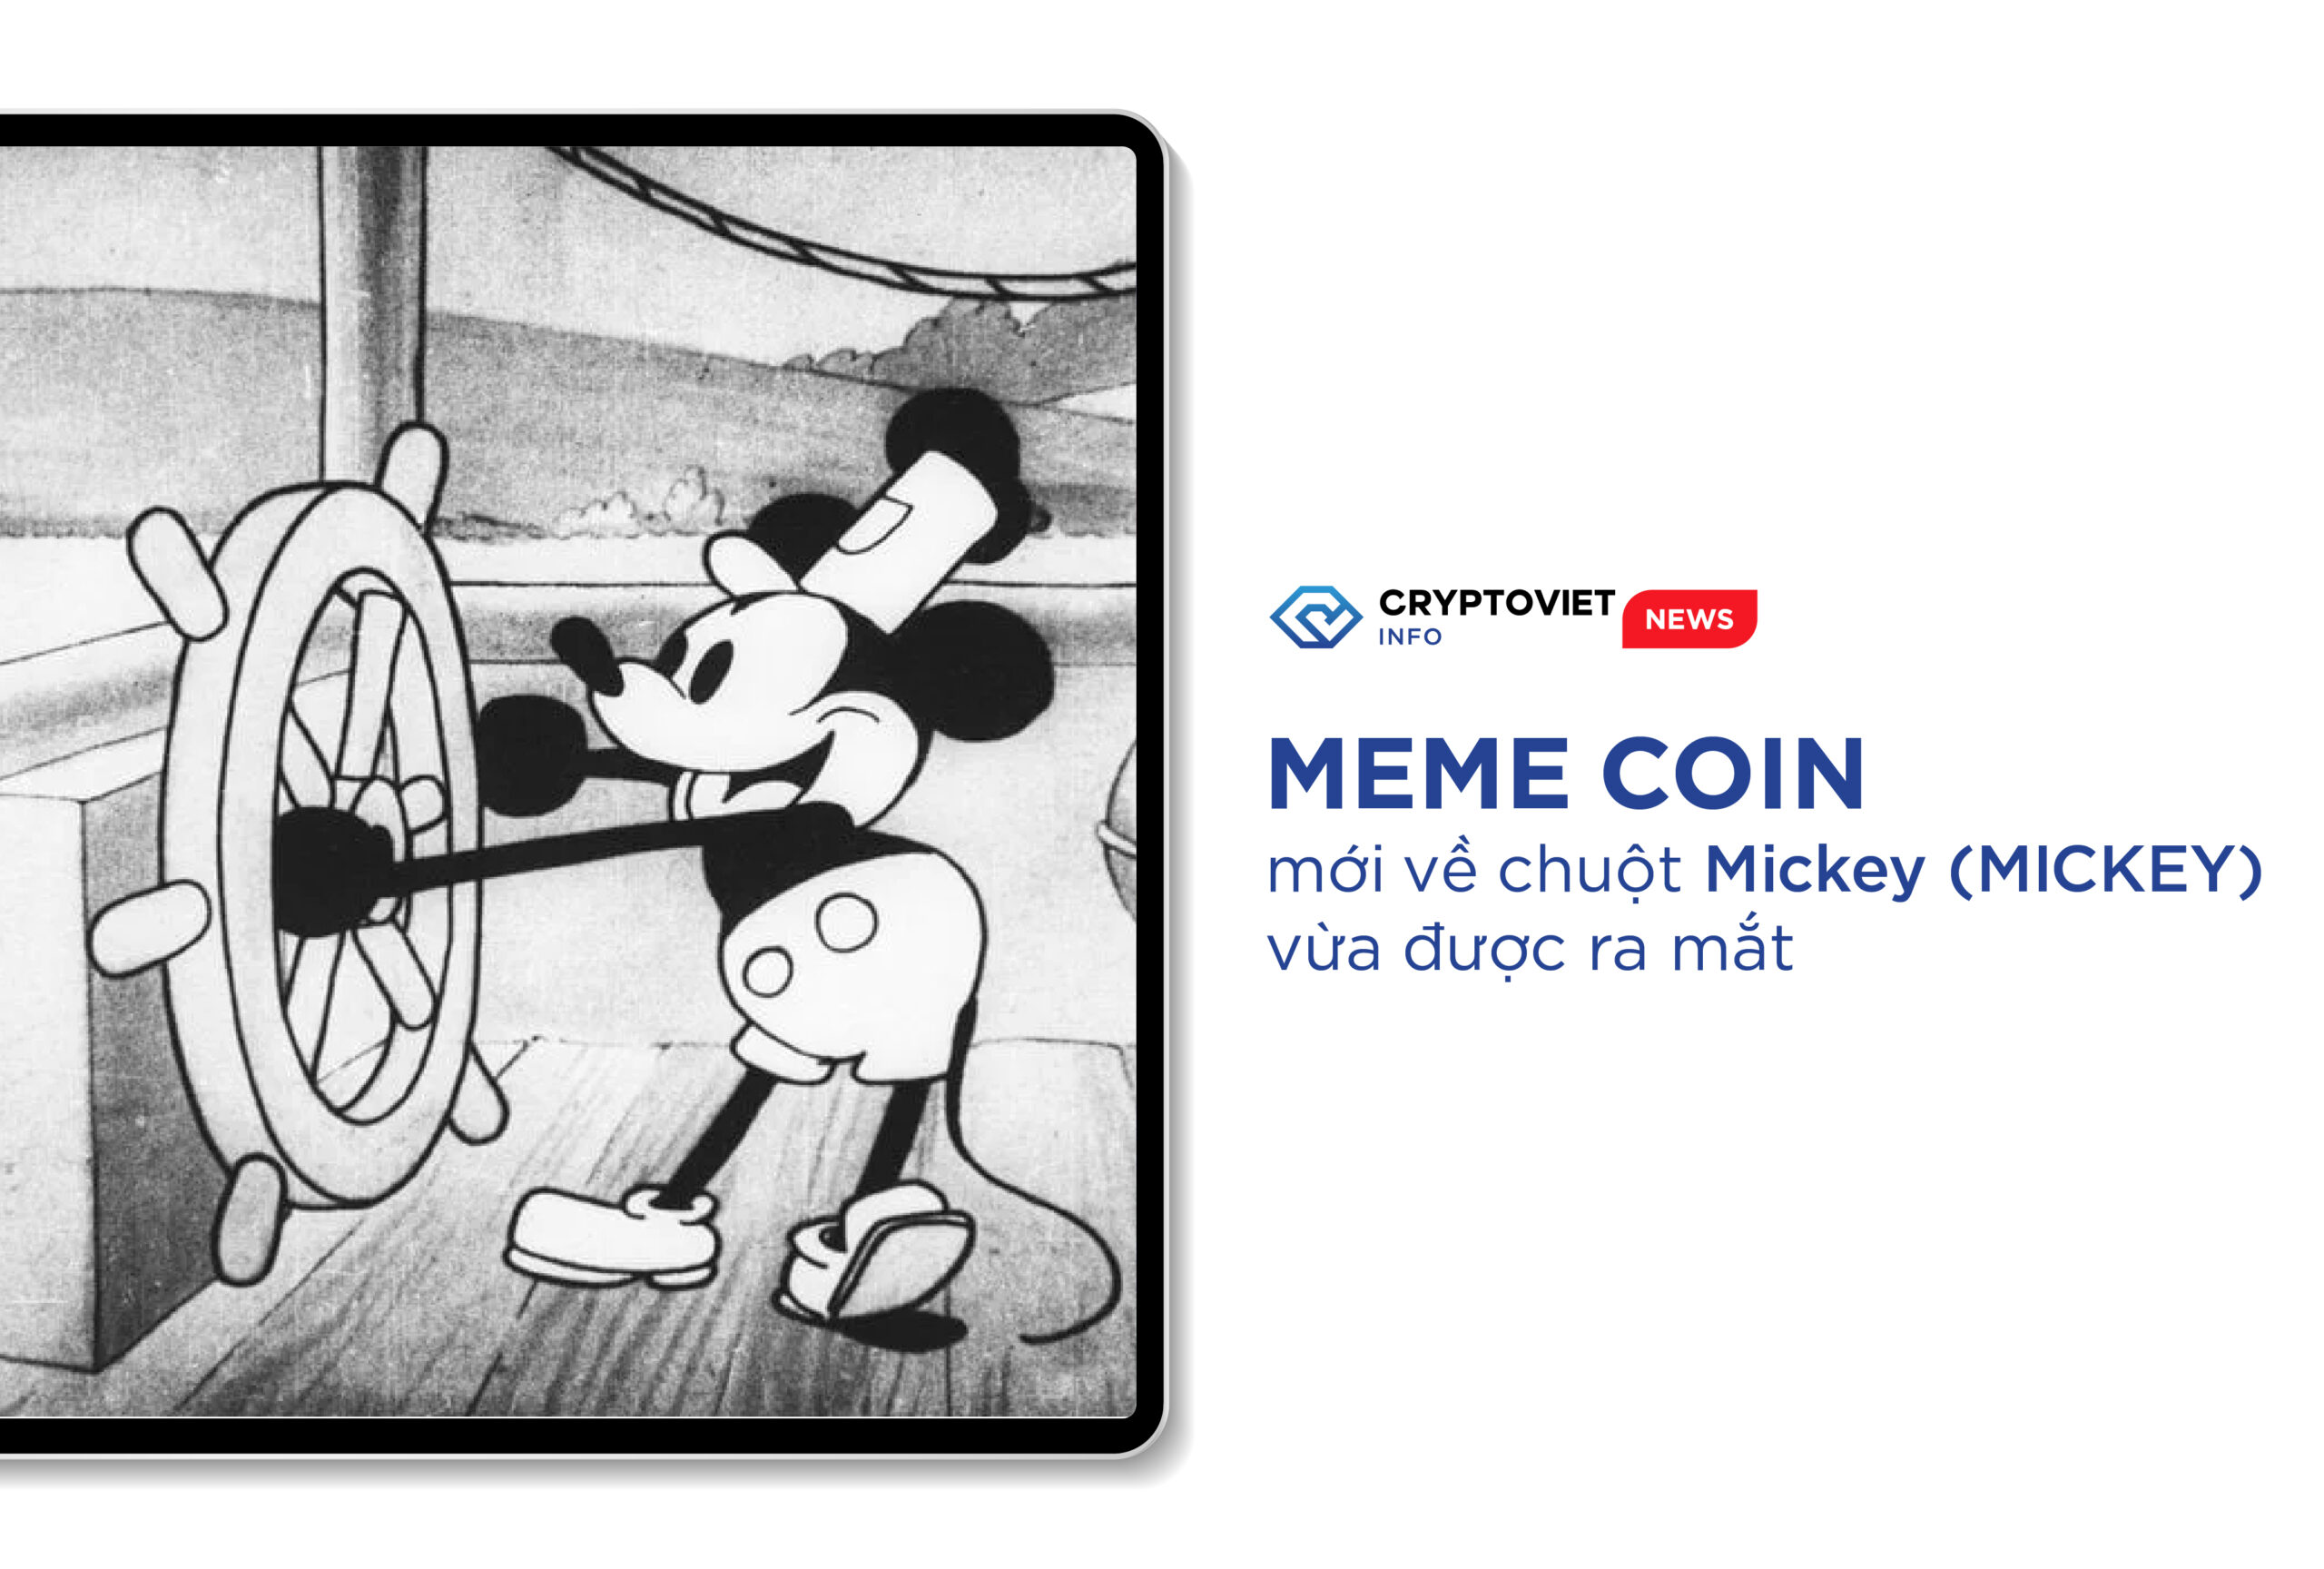 Meme coin mới về chuột Mickey (MICKEY) vừa được ra mắt